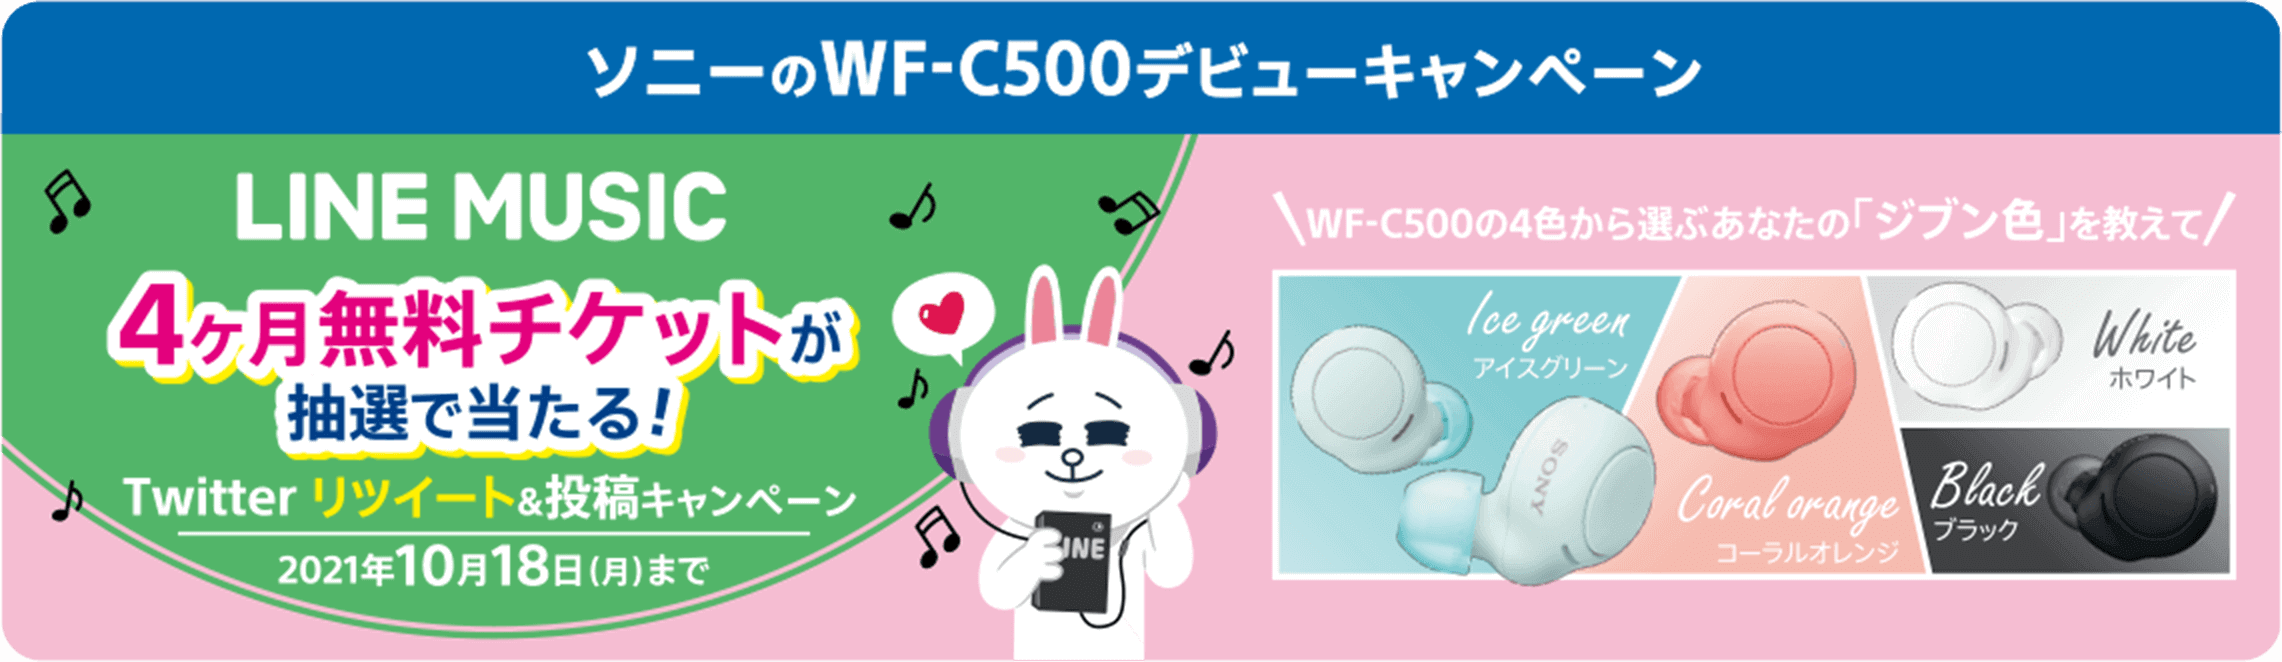 ソニーのWF-C500デビューキャンペーン